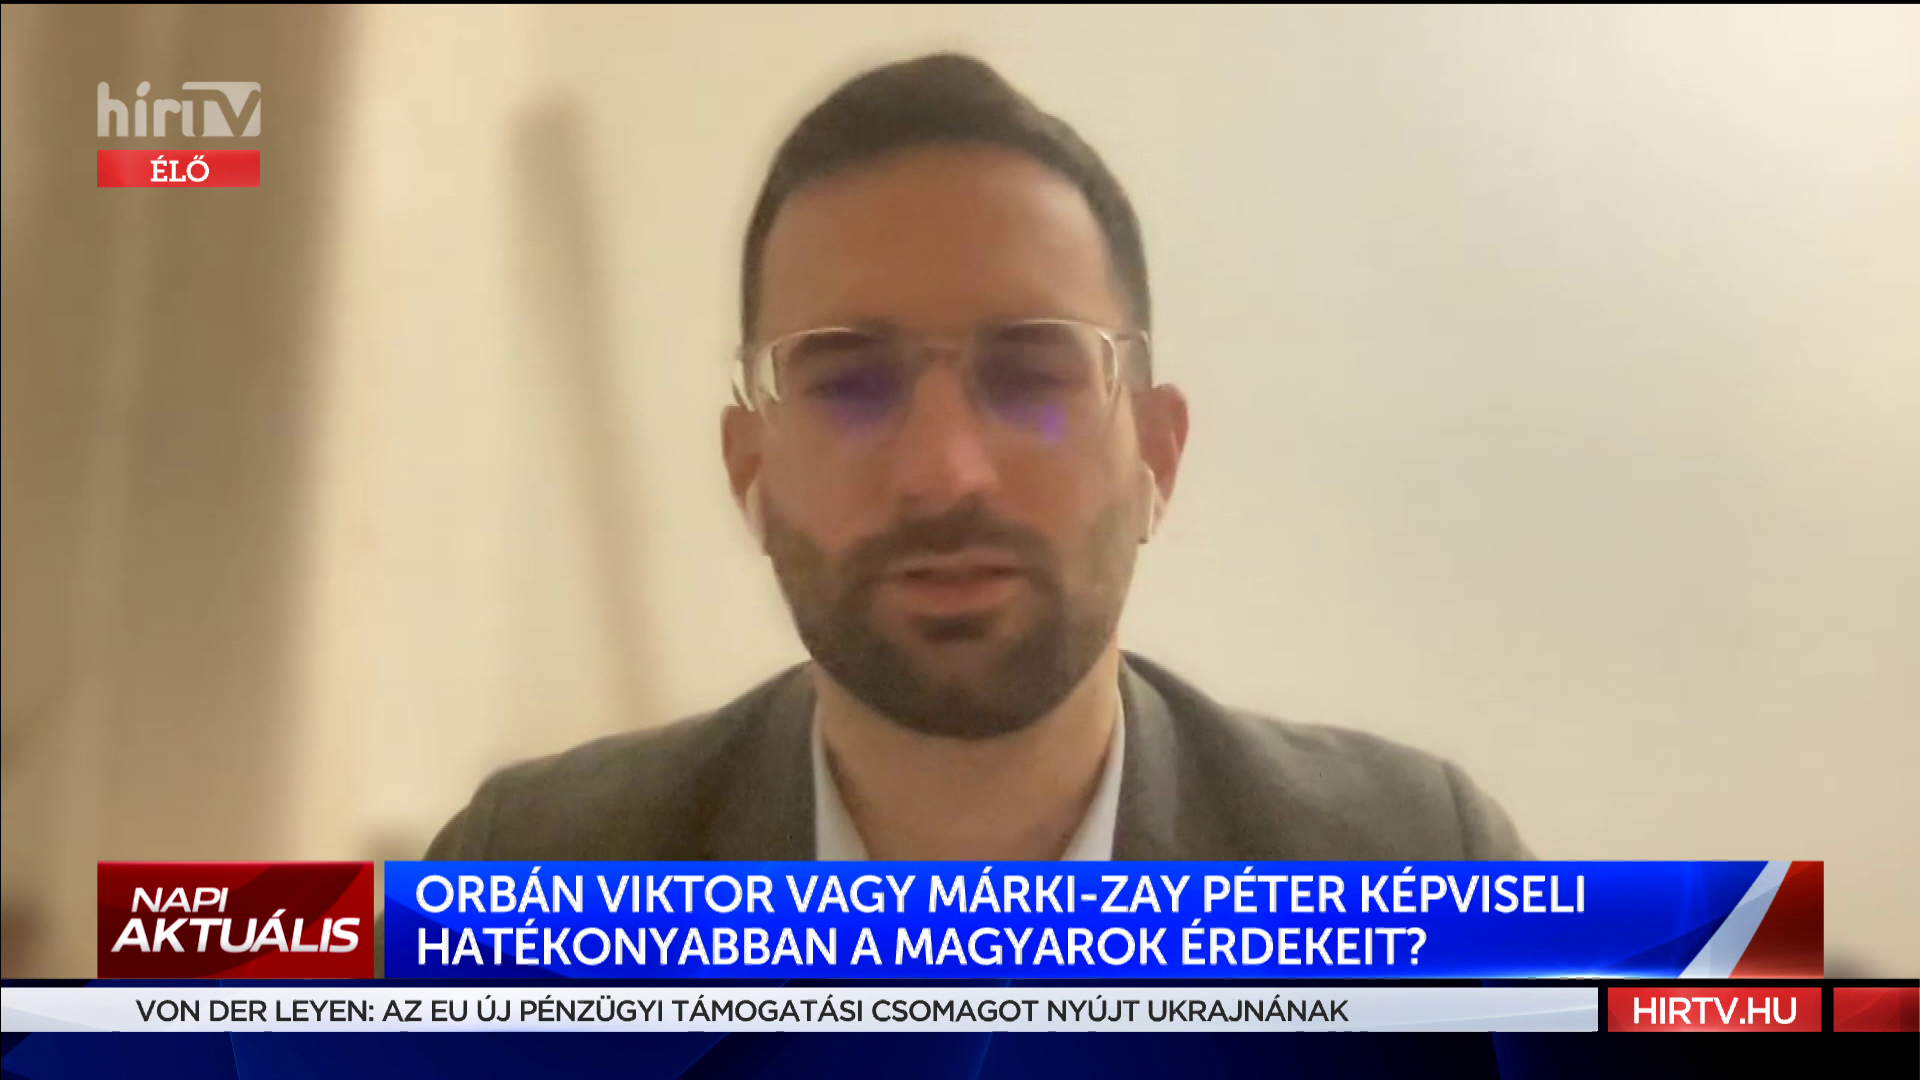 Orbán Viktor vagy Márki-Zay Péter képviseli hatékonyabban a magyarok érdekeit?